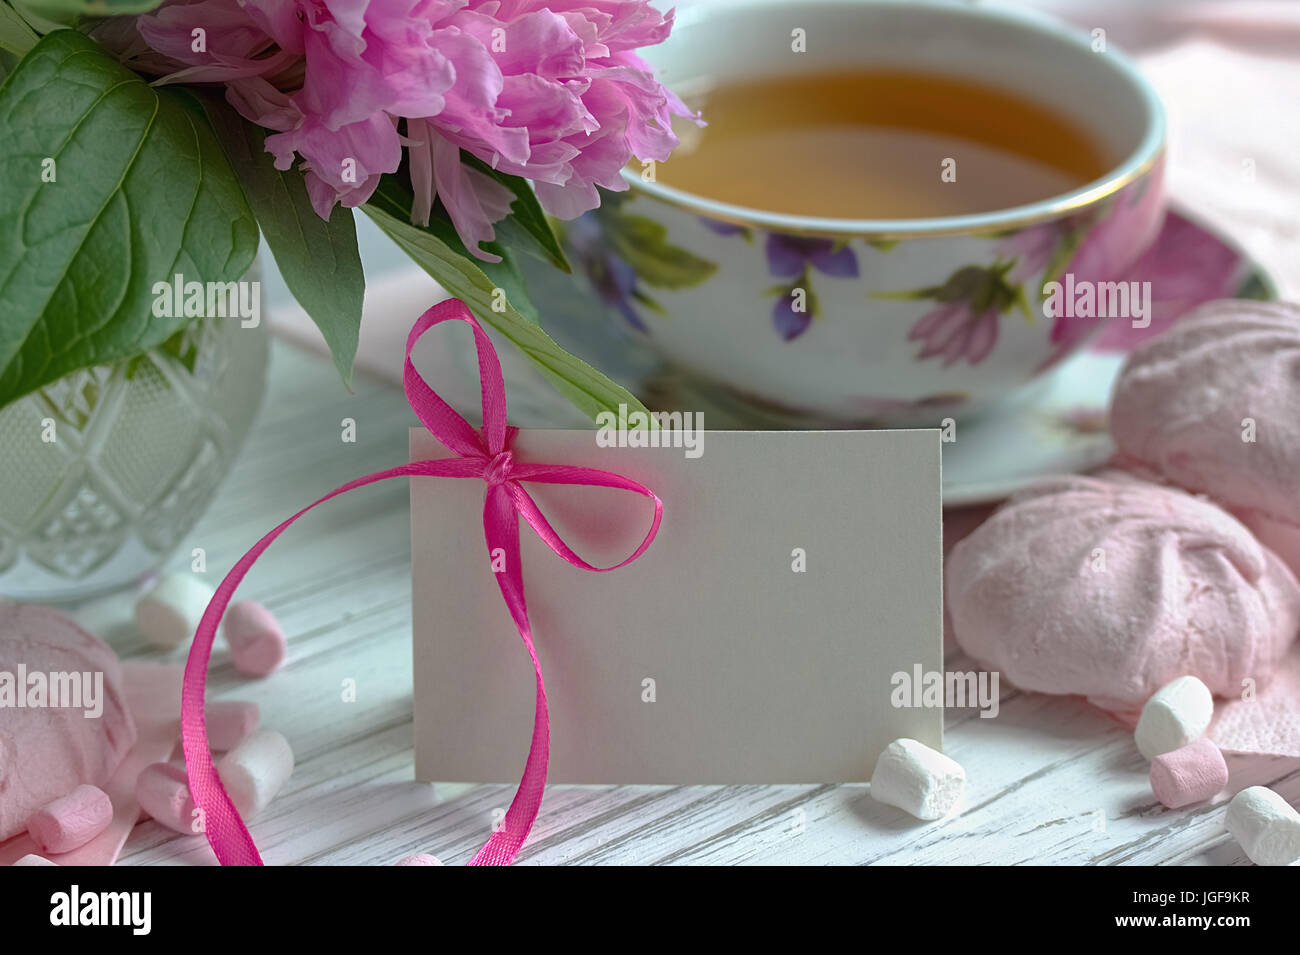 Les Pivoines rose fleurs tasse de thé carte de souhaits marshmallow sur un fond en bois blanc - stock image Banque D'Images